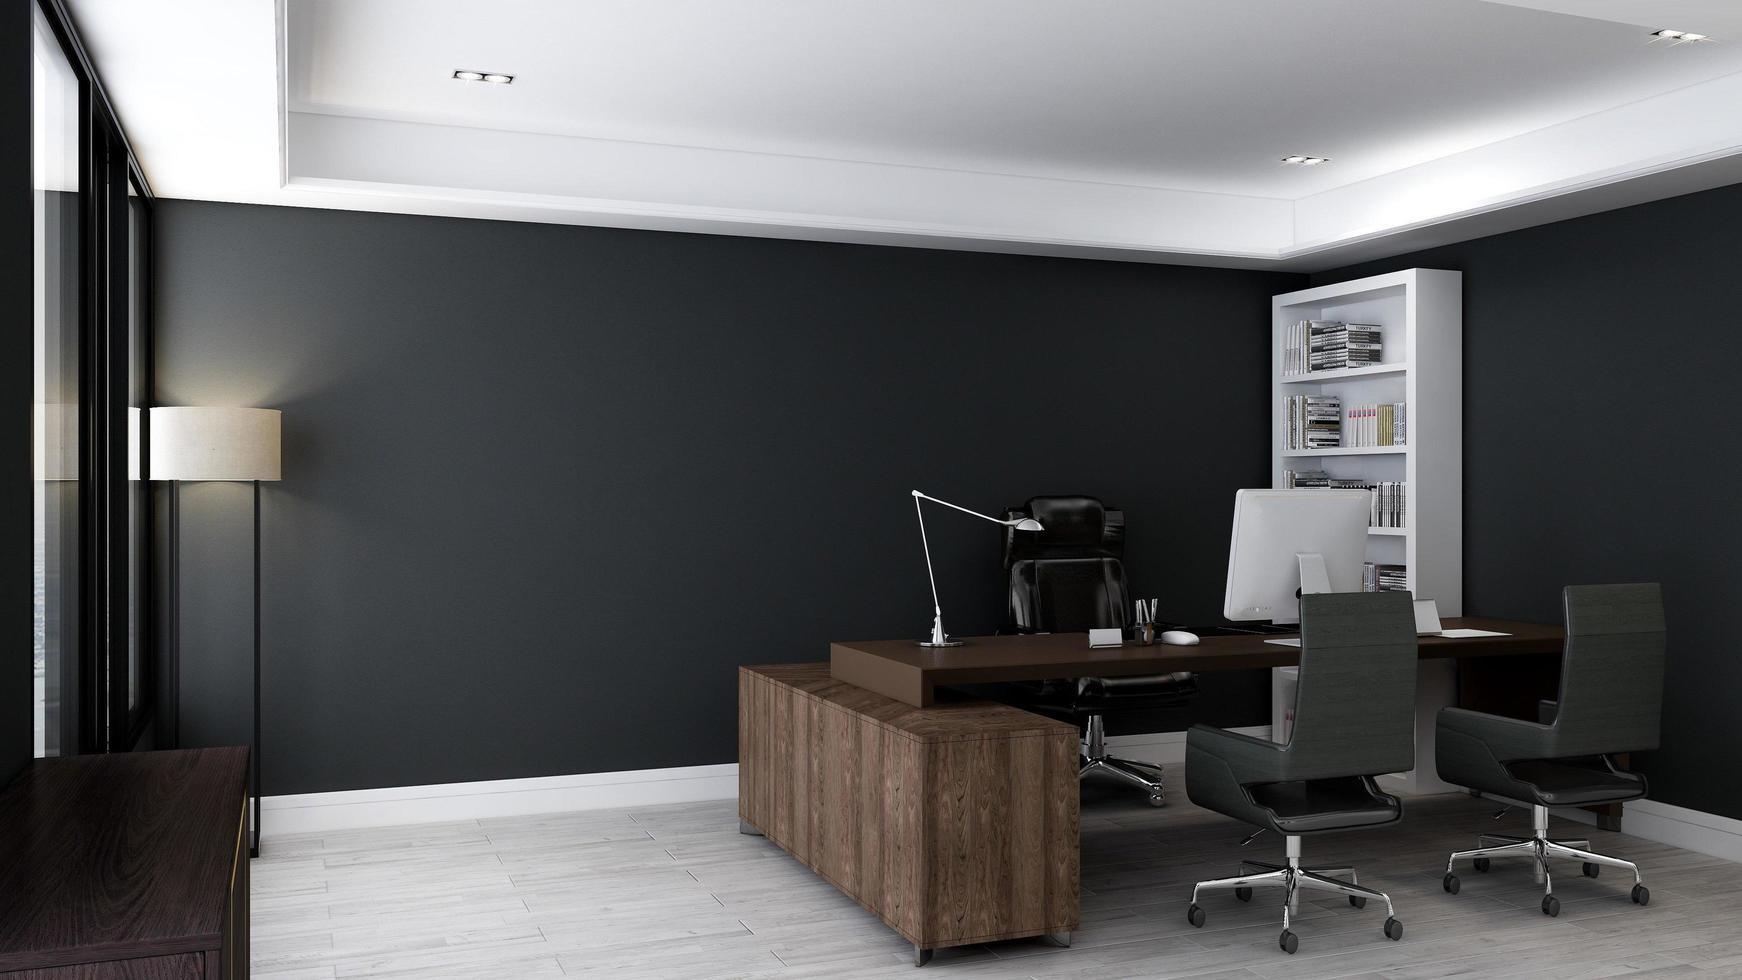 3d rendono la stanza minimalista dell'ufficio con interni di design in legno foto